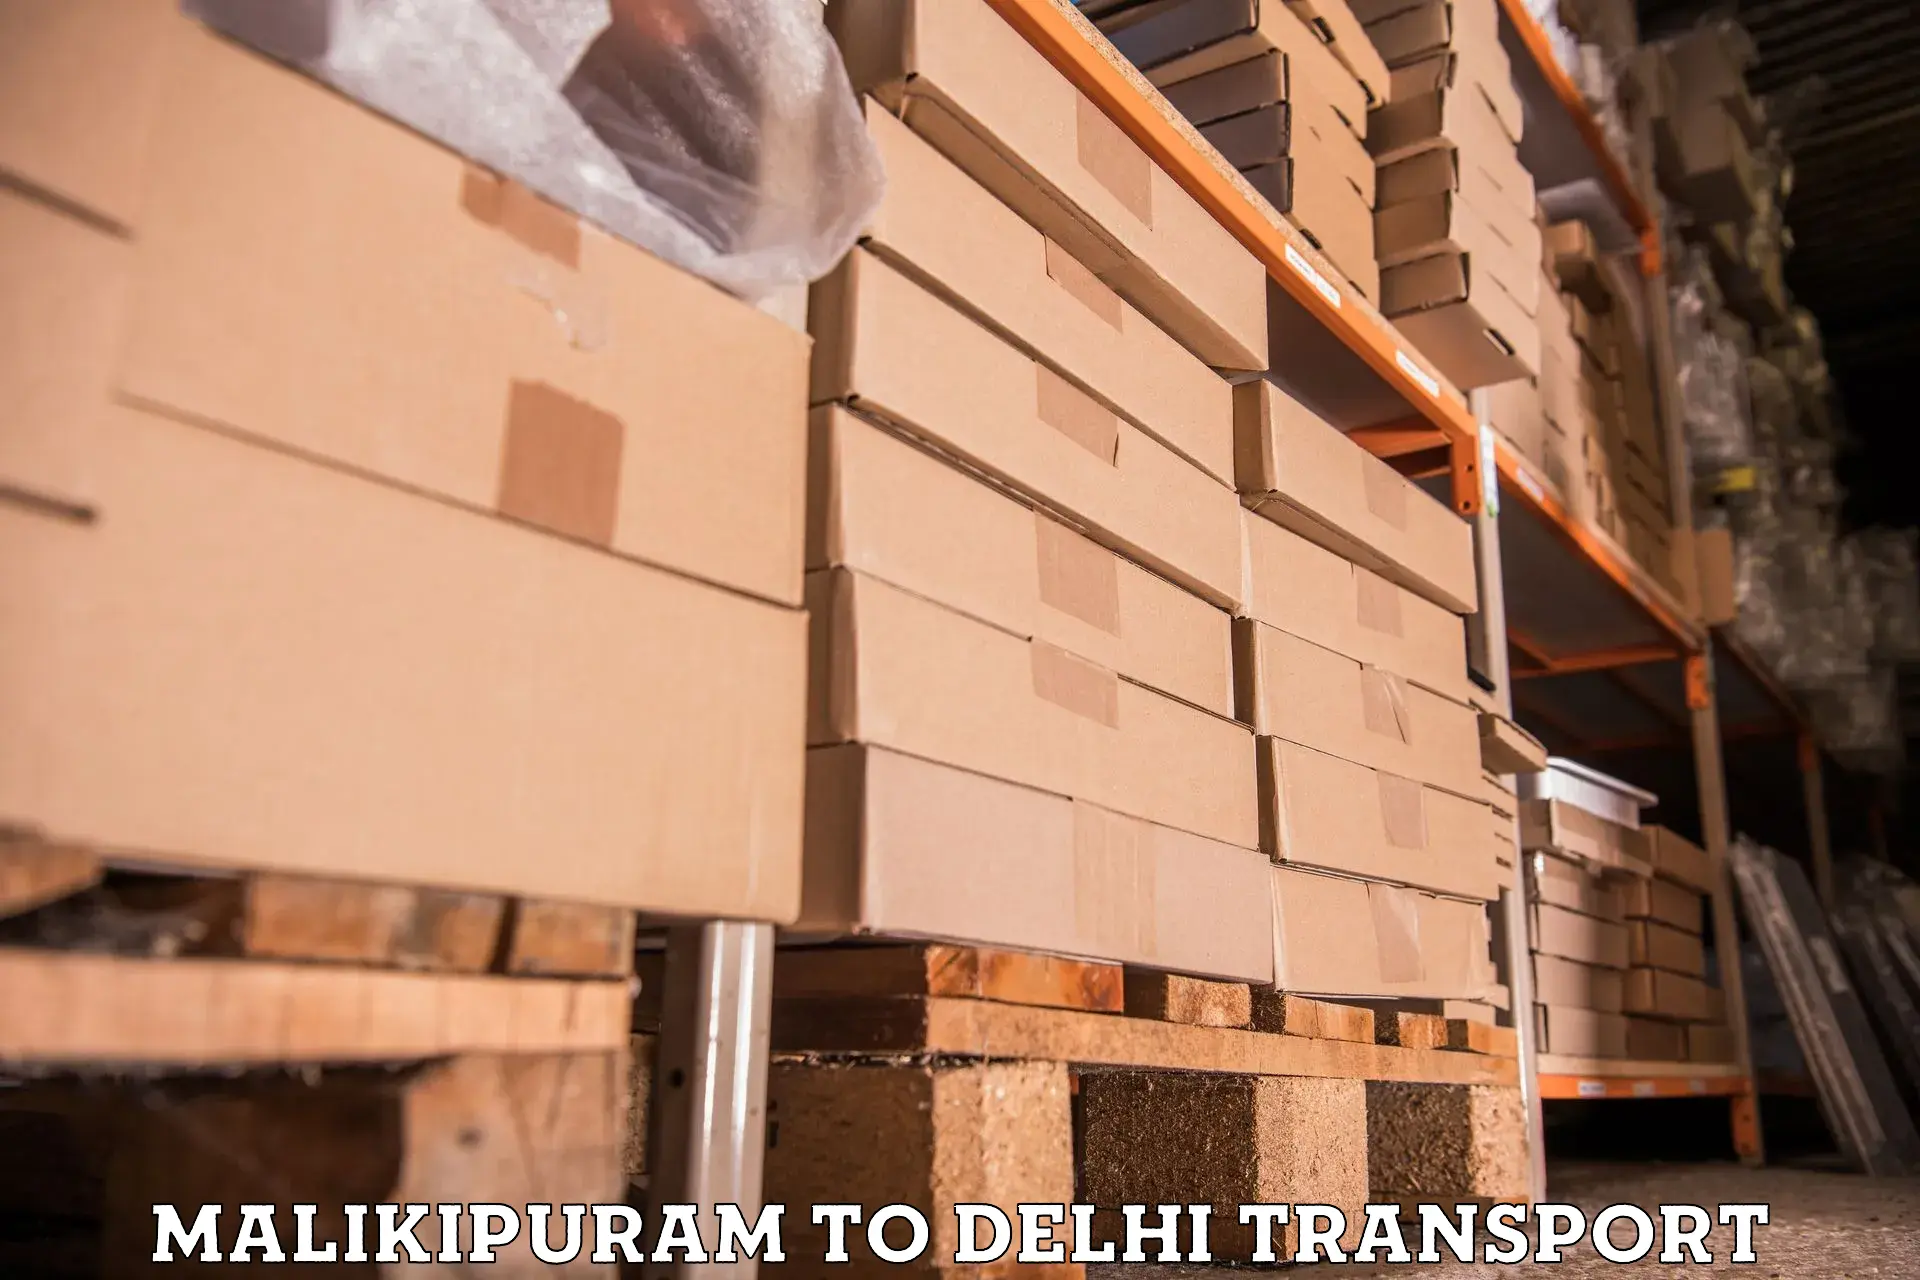 Commercial transport service Malikipuram to University of Delhi